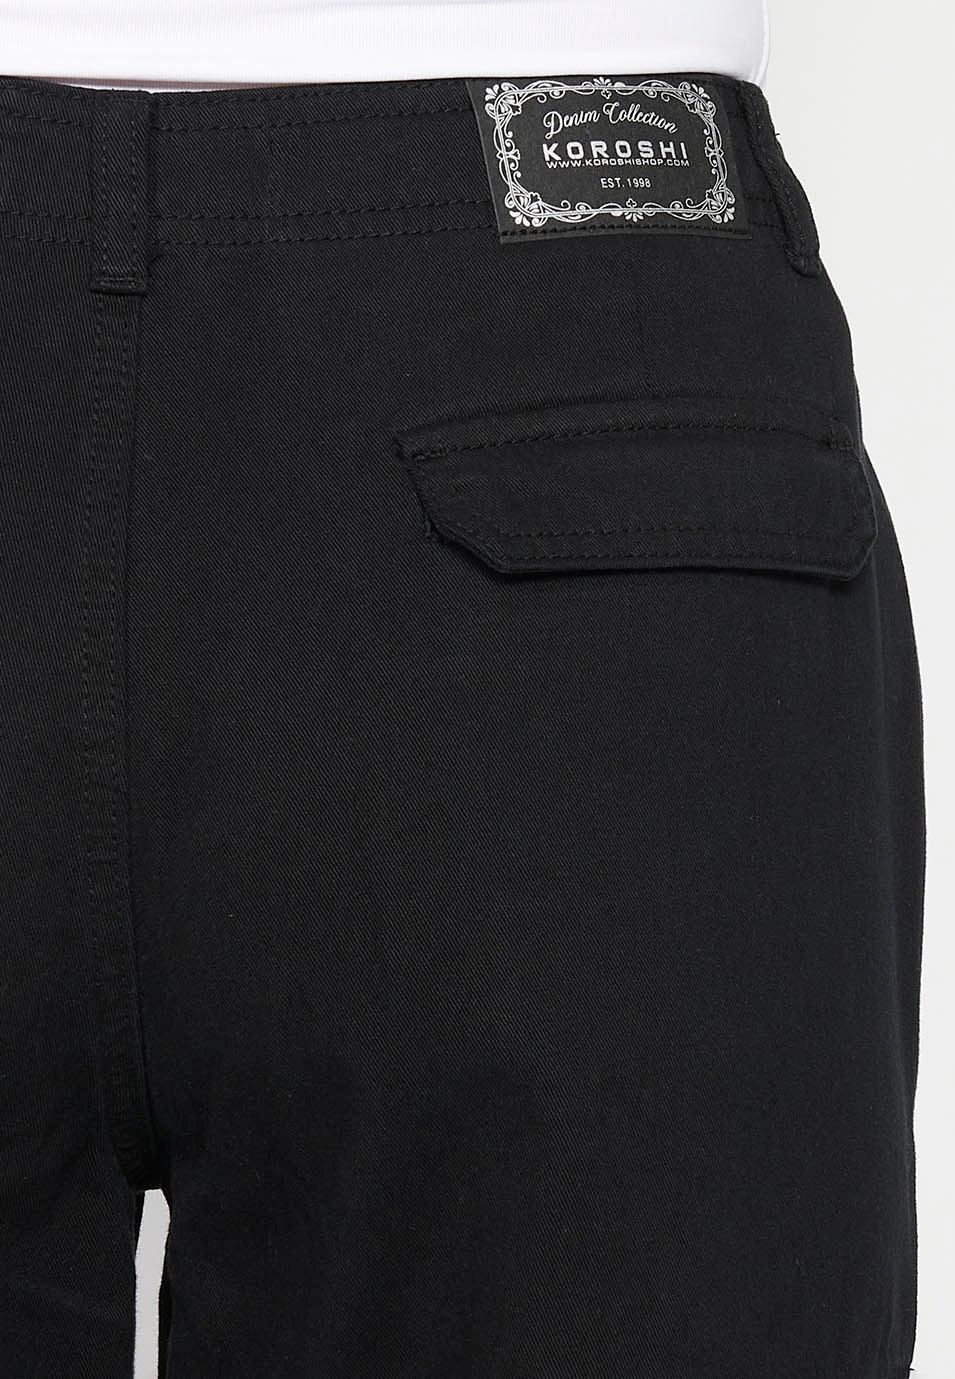 Lange Baumwoll-Cargohose mit Taschen, schwarze Farbe für Damen